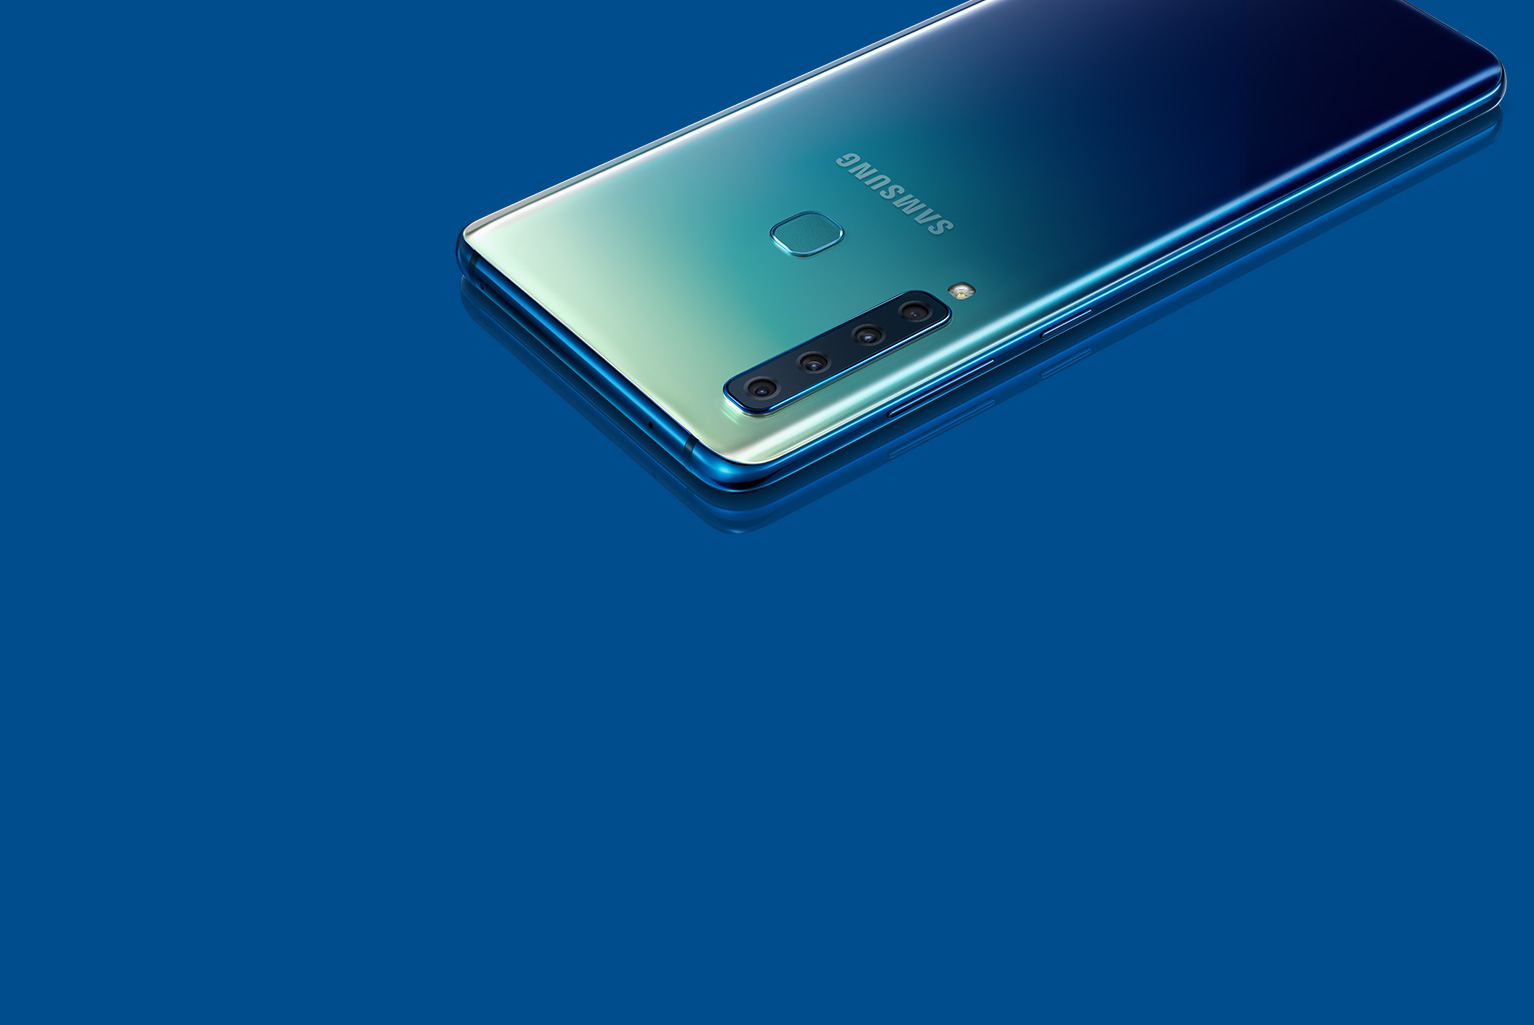 Samsung Galaxy A7 Blue